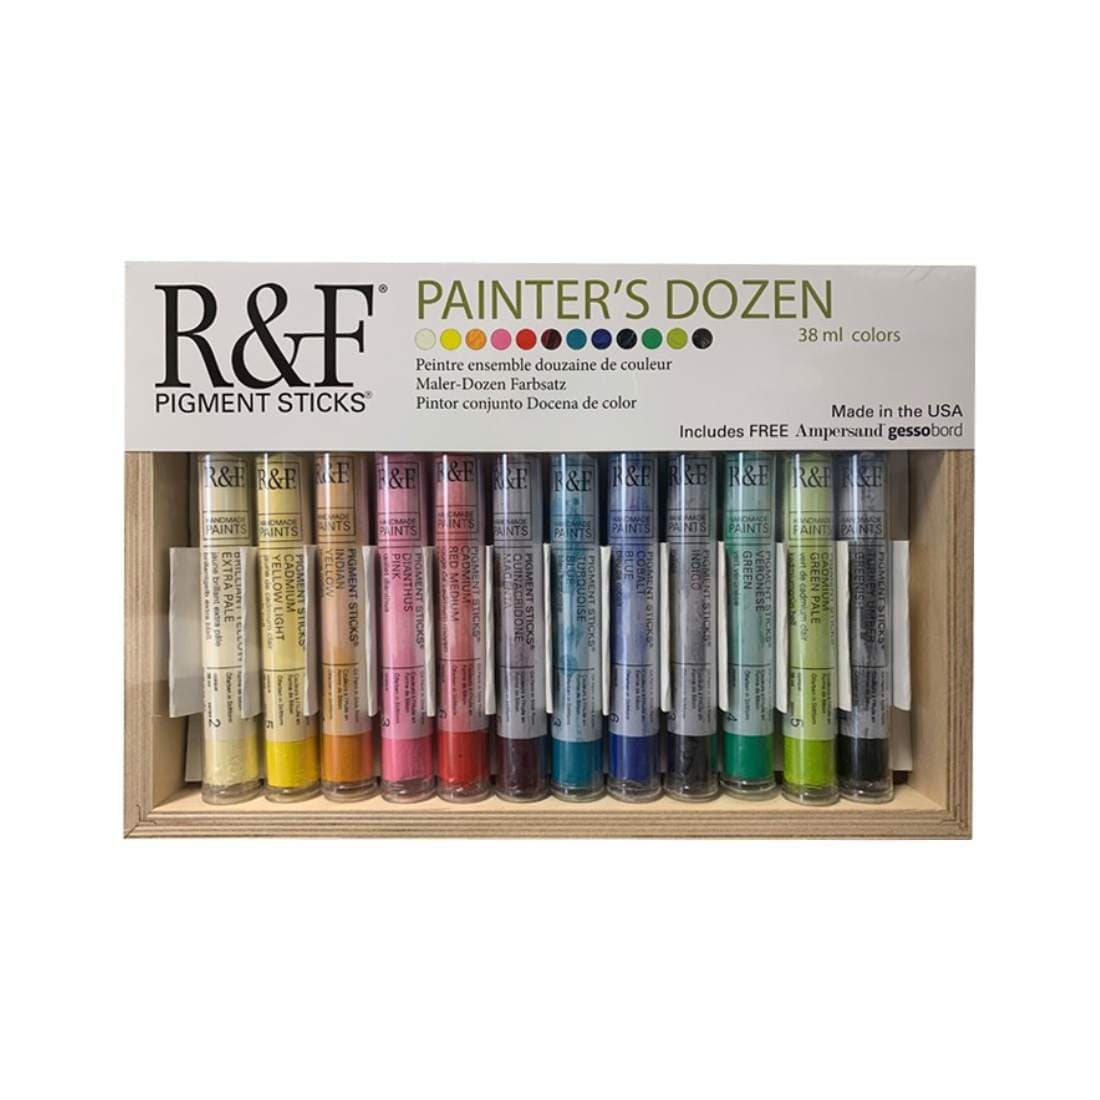 R&F Handmade Paints PIGMENT STICKS R&F - Pigment Sticks - Painter's Dozen Set - 12 Colours - Item #2950